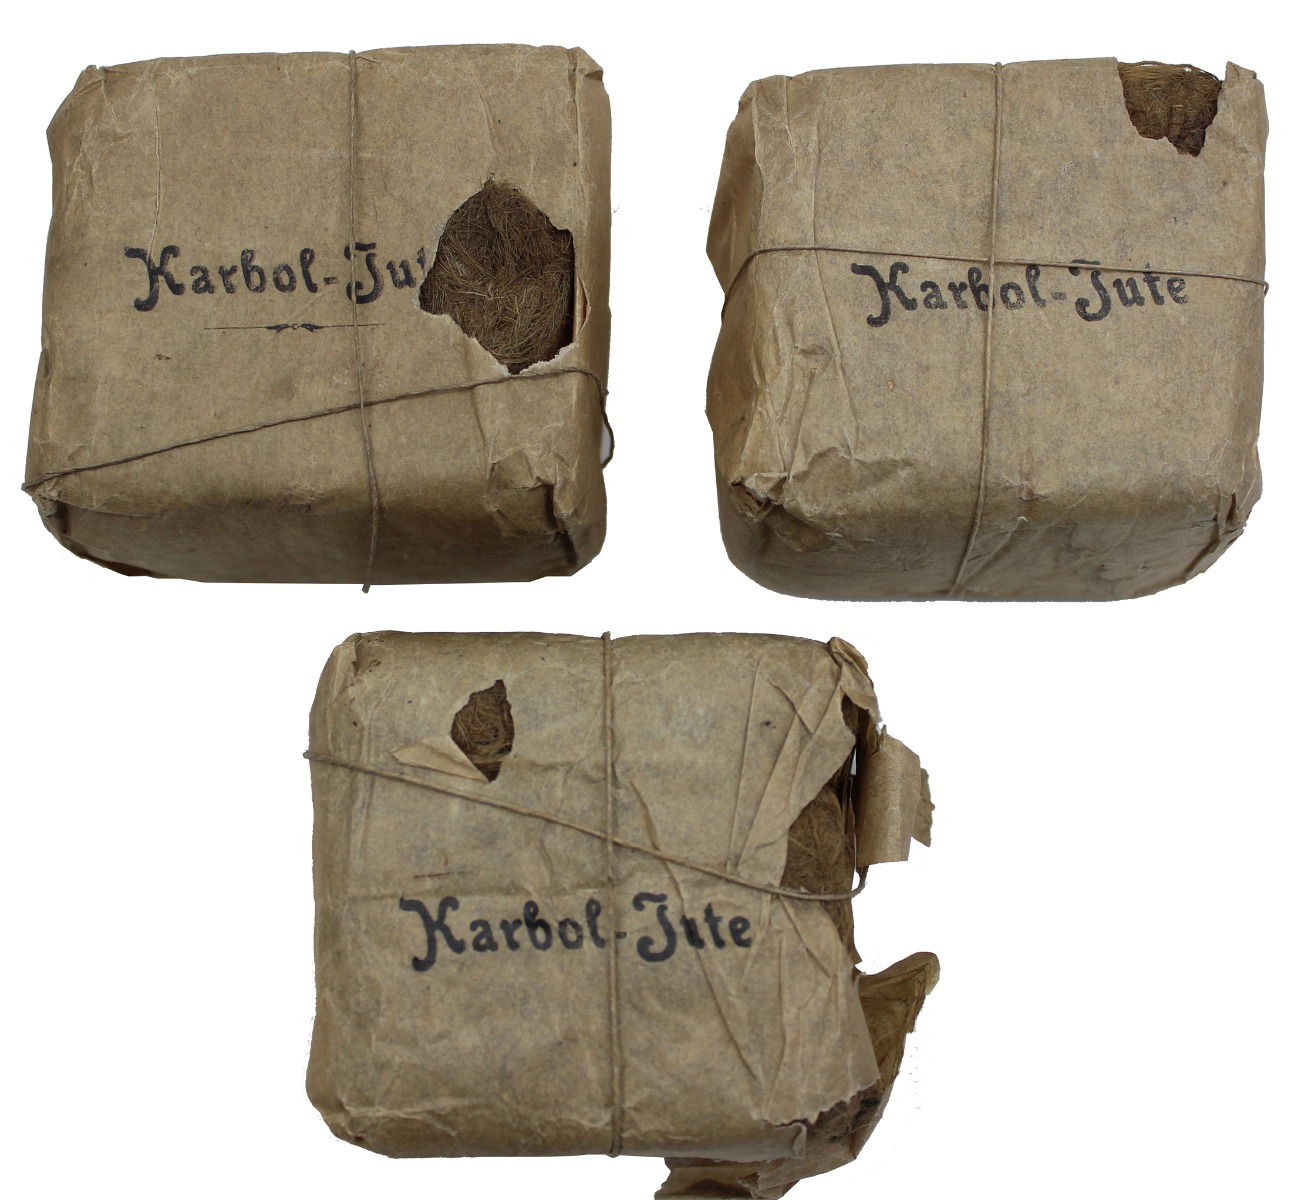 WW2 GERMAN BANDAGE IN ORIGINAL PAPER PACKAGING KARBOL JUTE